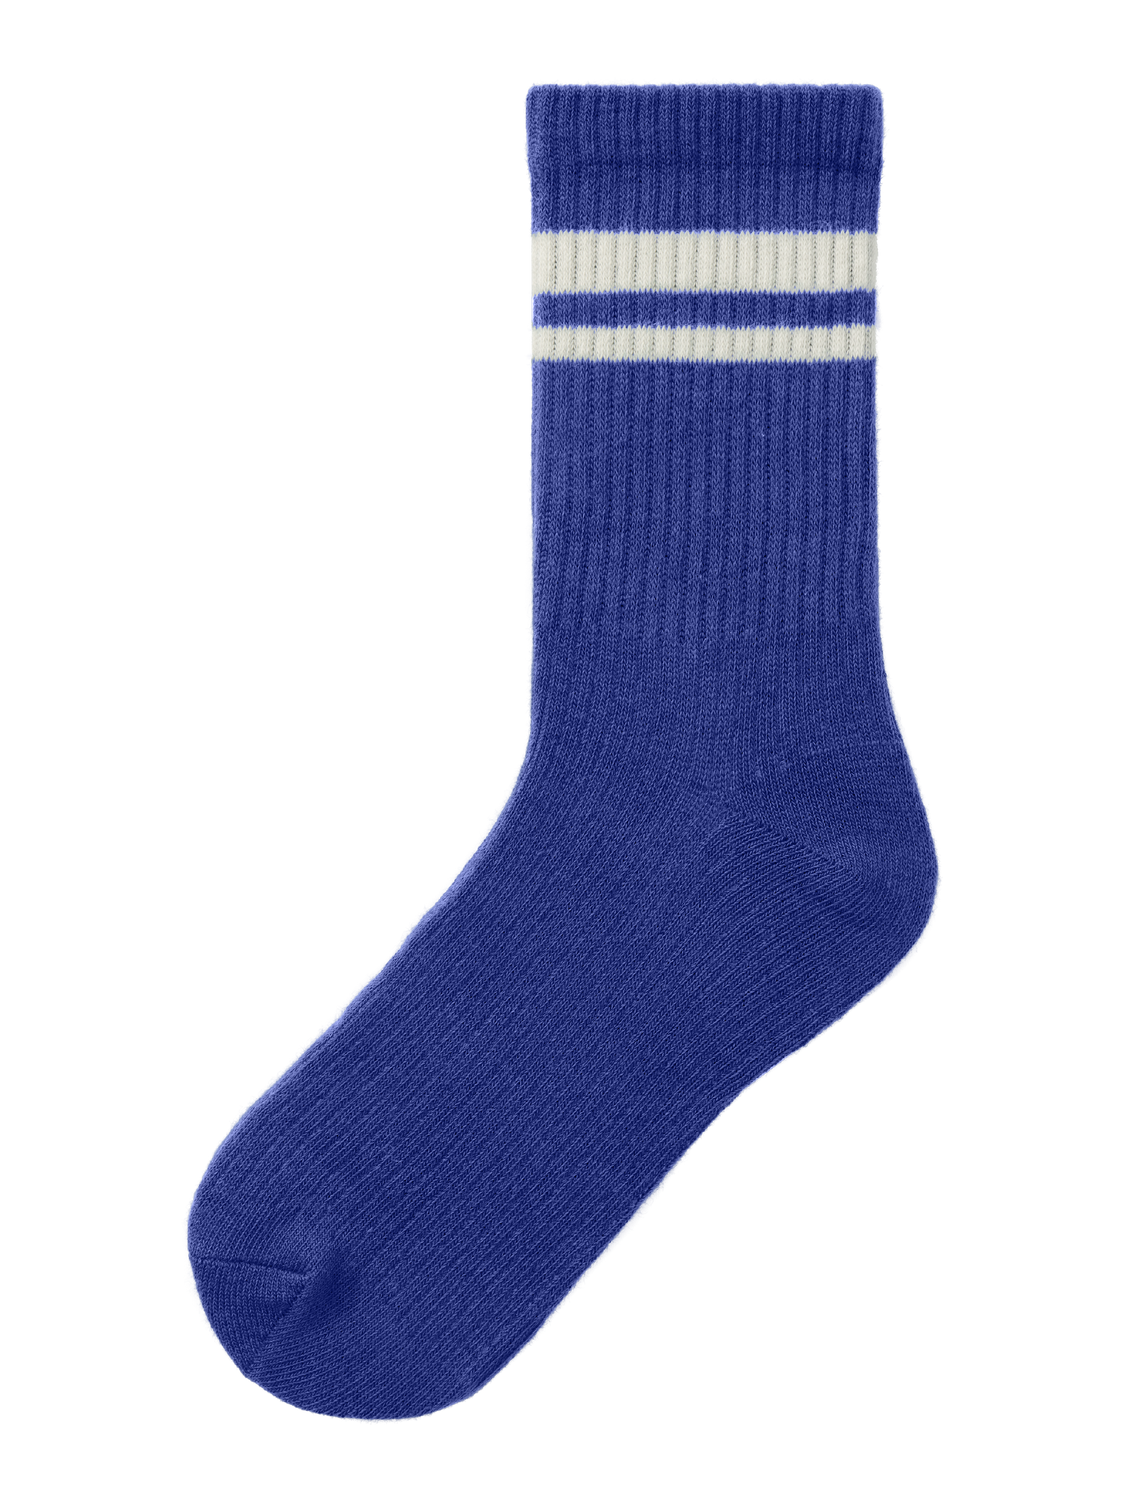 NKMNEANO Socks - Bluing